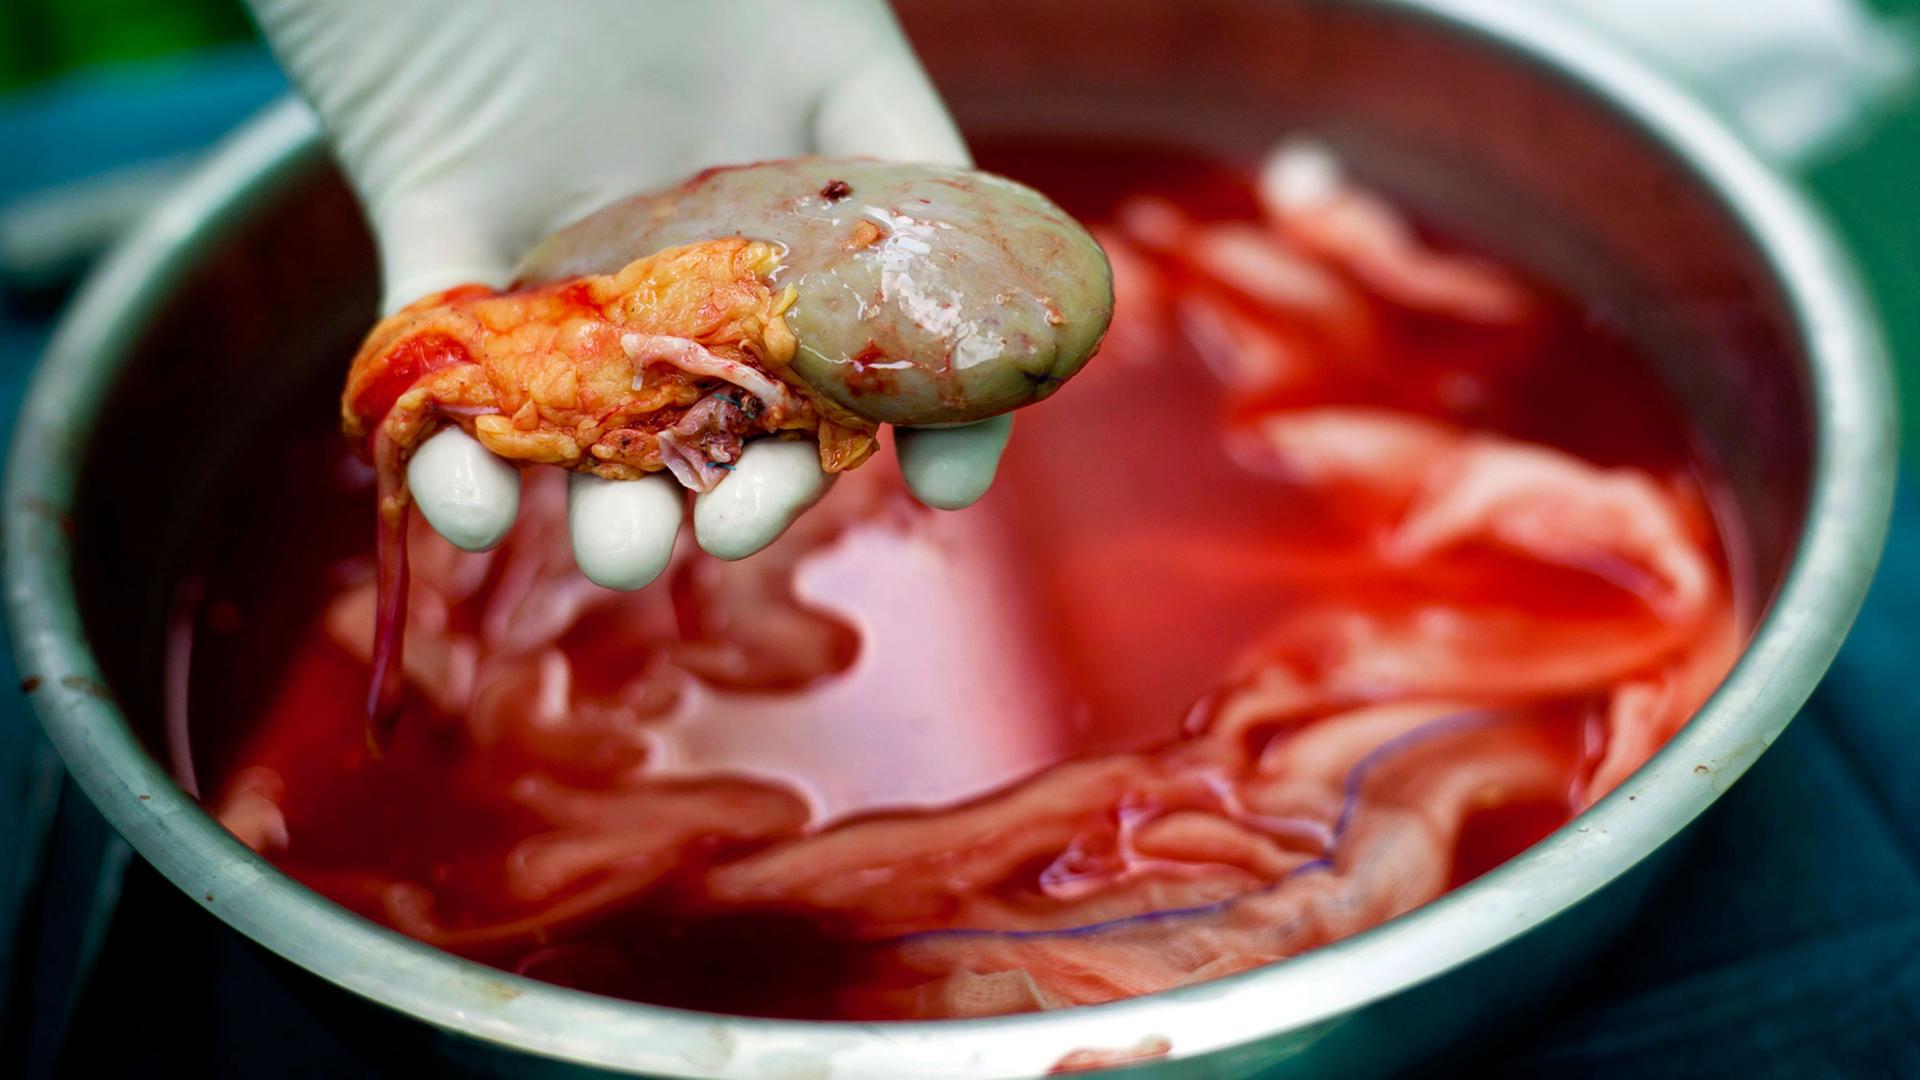 Eine zur Transplantation vorgesehene Niere wird von einer behandschuhten Hand aus einer Metallschüssel genommen.